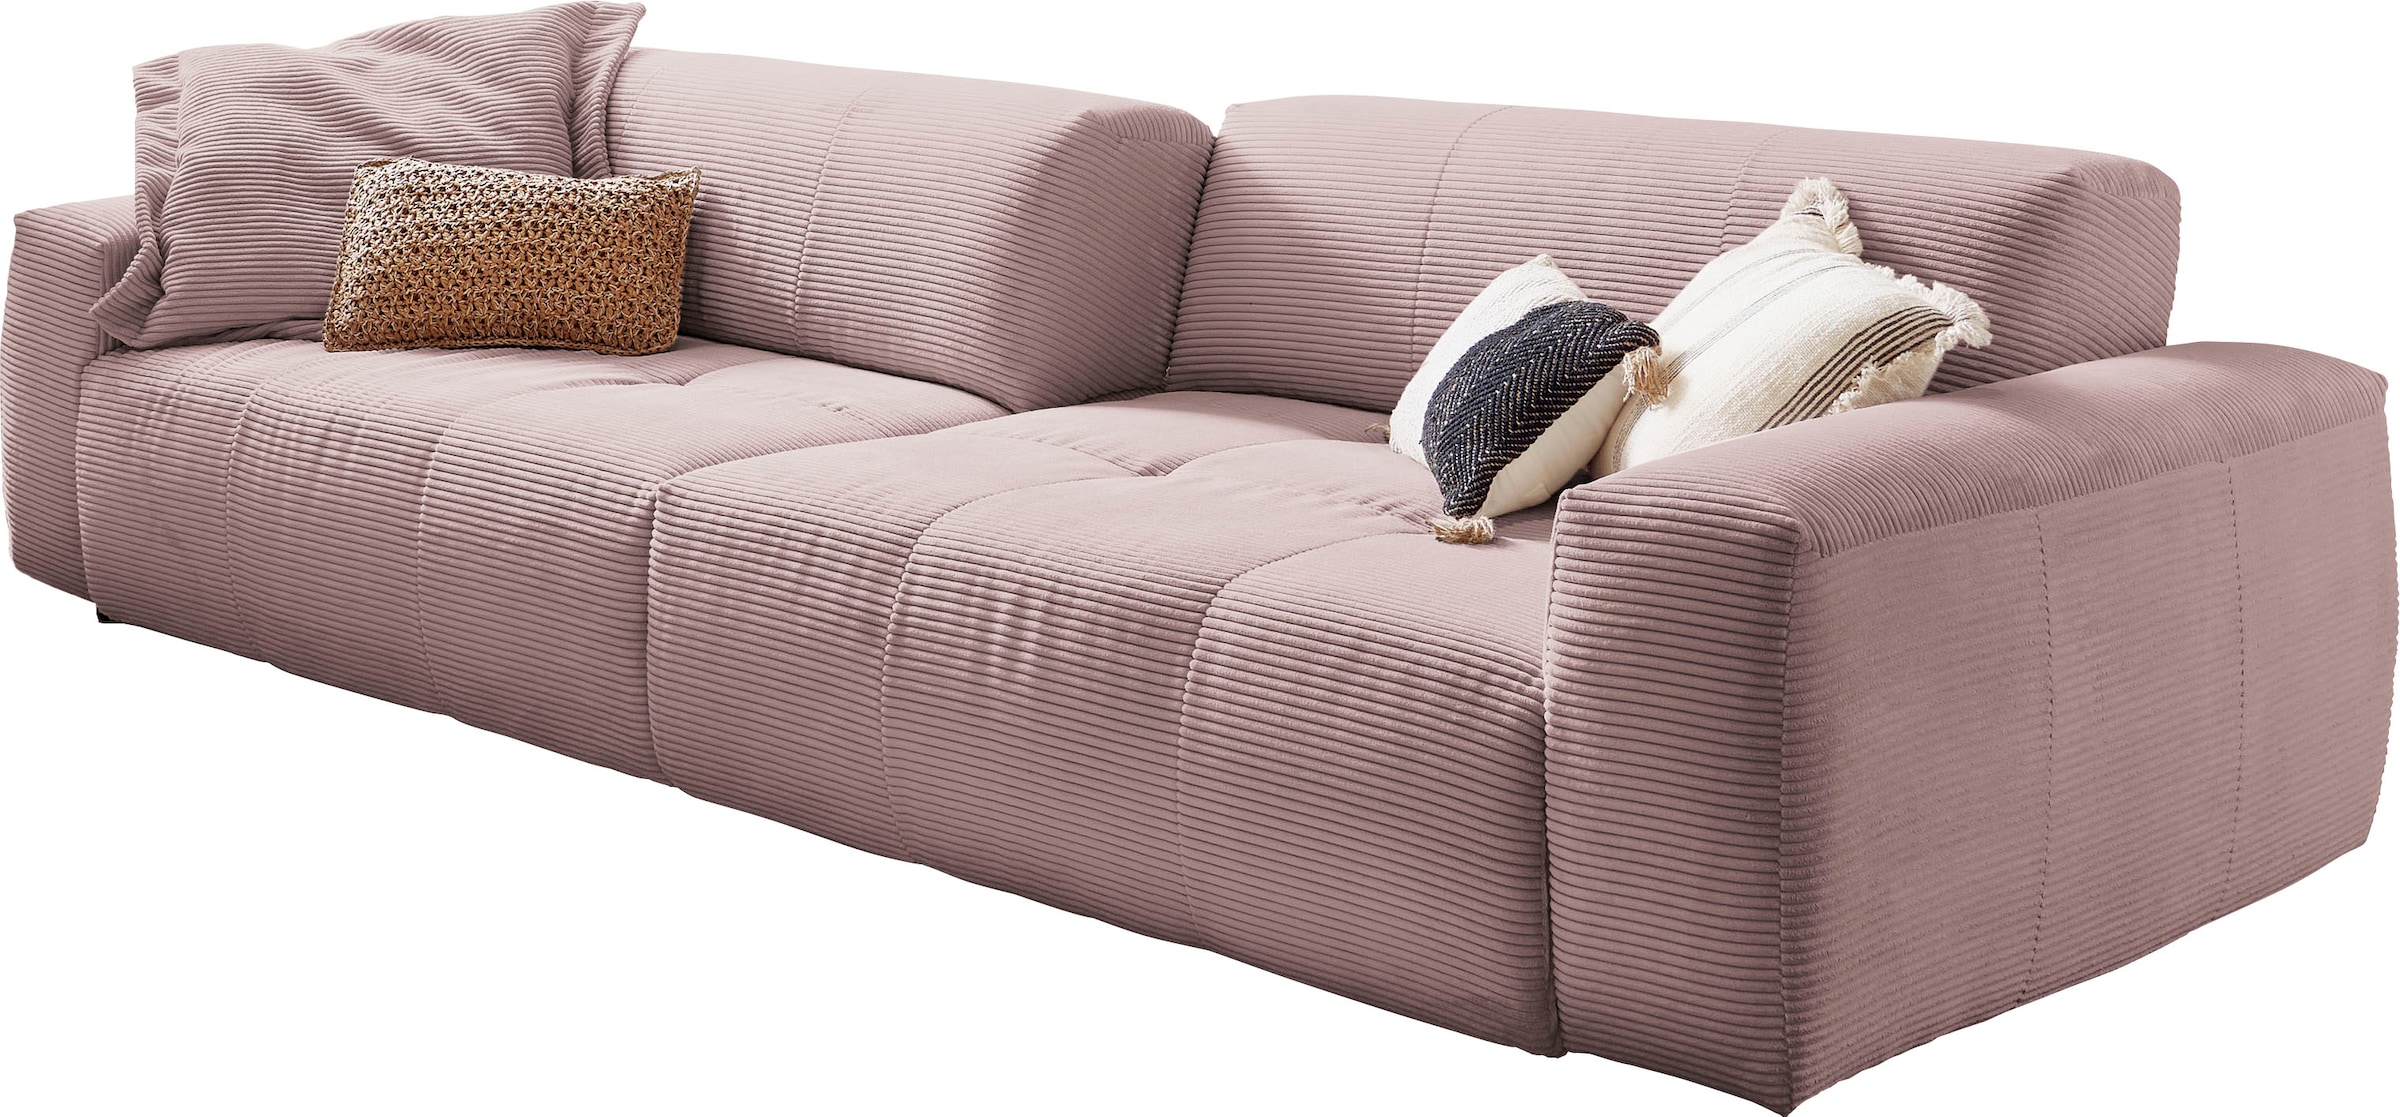 Big-Sofa »Yoshy«, Zwei Sitztiefen durch verstellbare Rückenlehne, Bezug in Cord